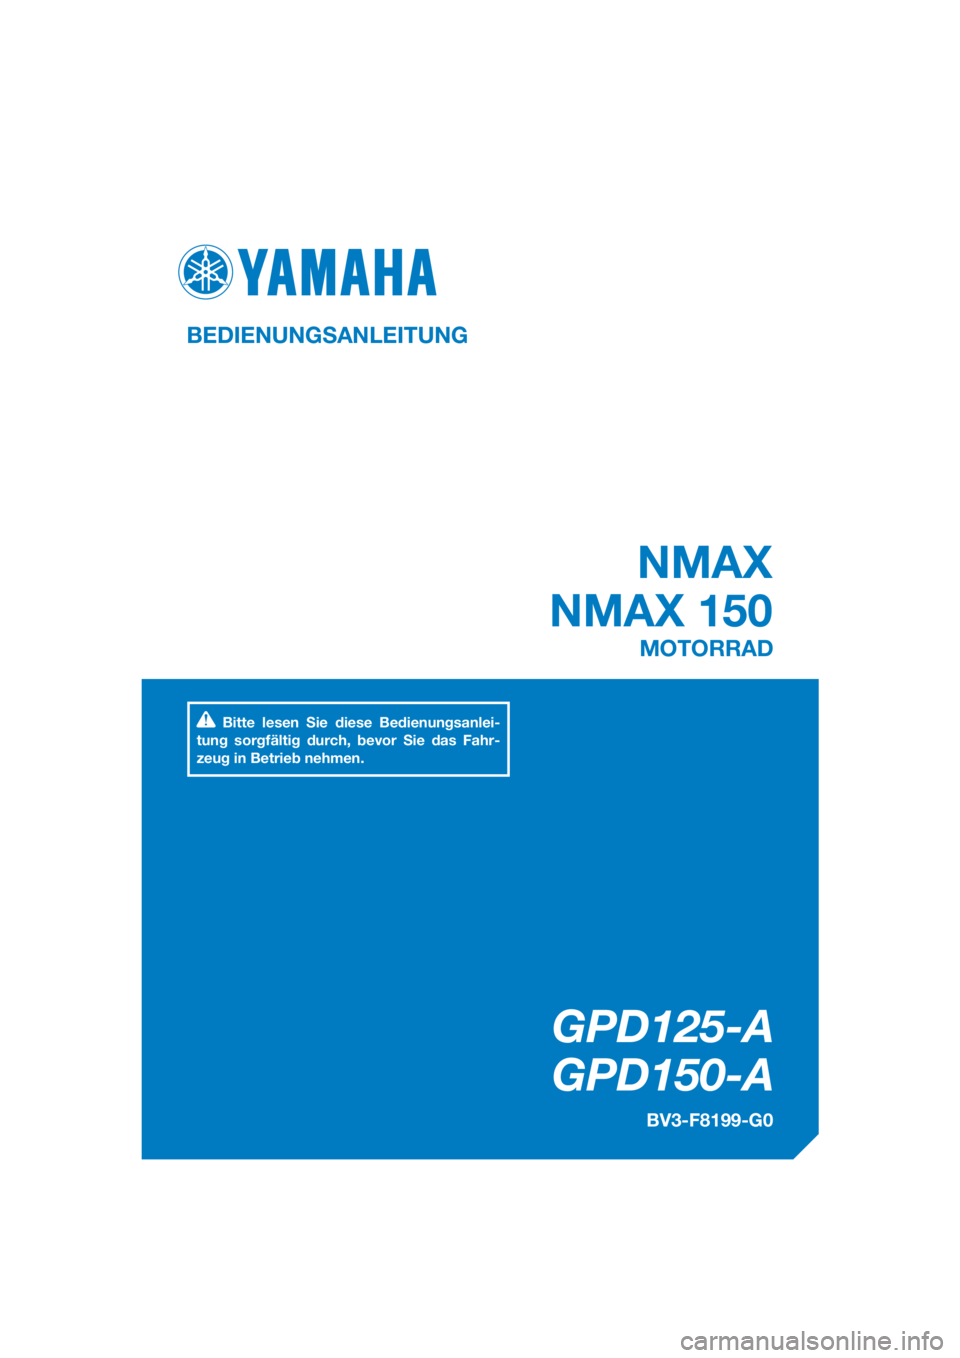 YAMAHA NMAX 125 2017  Betriebsanleitungen (in German) DIC183
GPD125-A
GPD150-A
NMAX
NMAX 150
BEDIENUNGSANLEITUNG
BV3-F8199-G0
MOTORRAD
Bitte lesen Sie diese Bedienungsanlei-
tung sorgfältig durch, bevor Sie das Fahr-
zeug in Betrieb nehmen.
[German  (G)